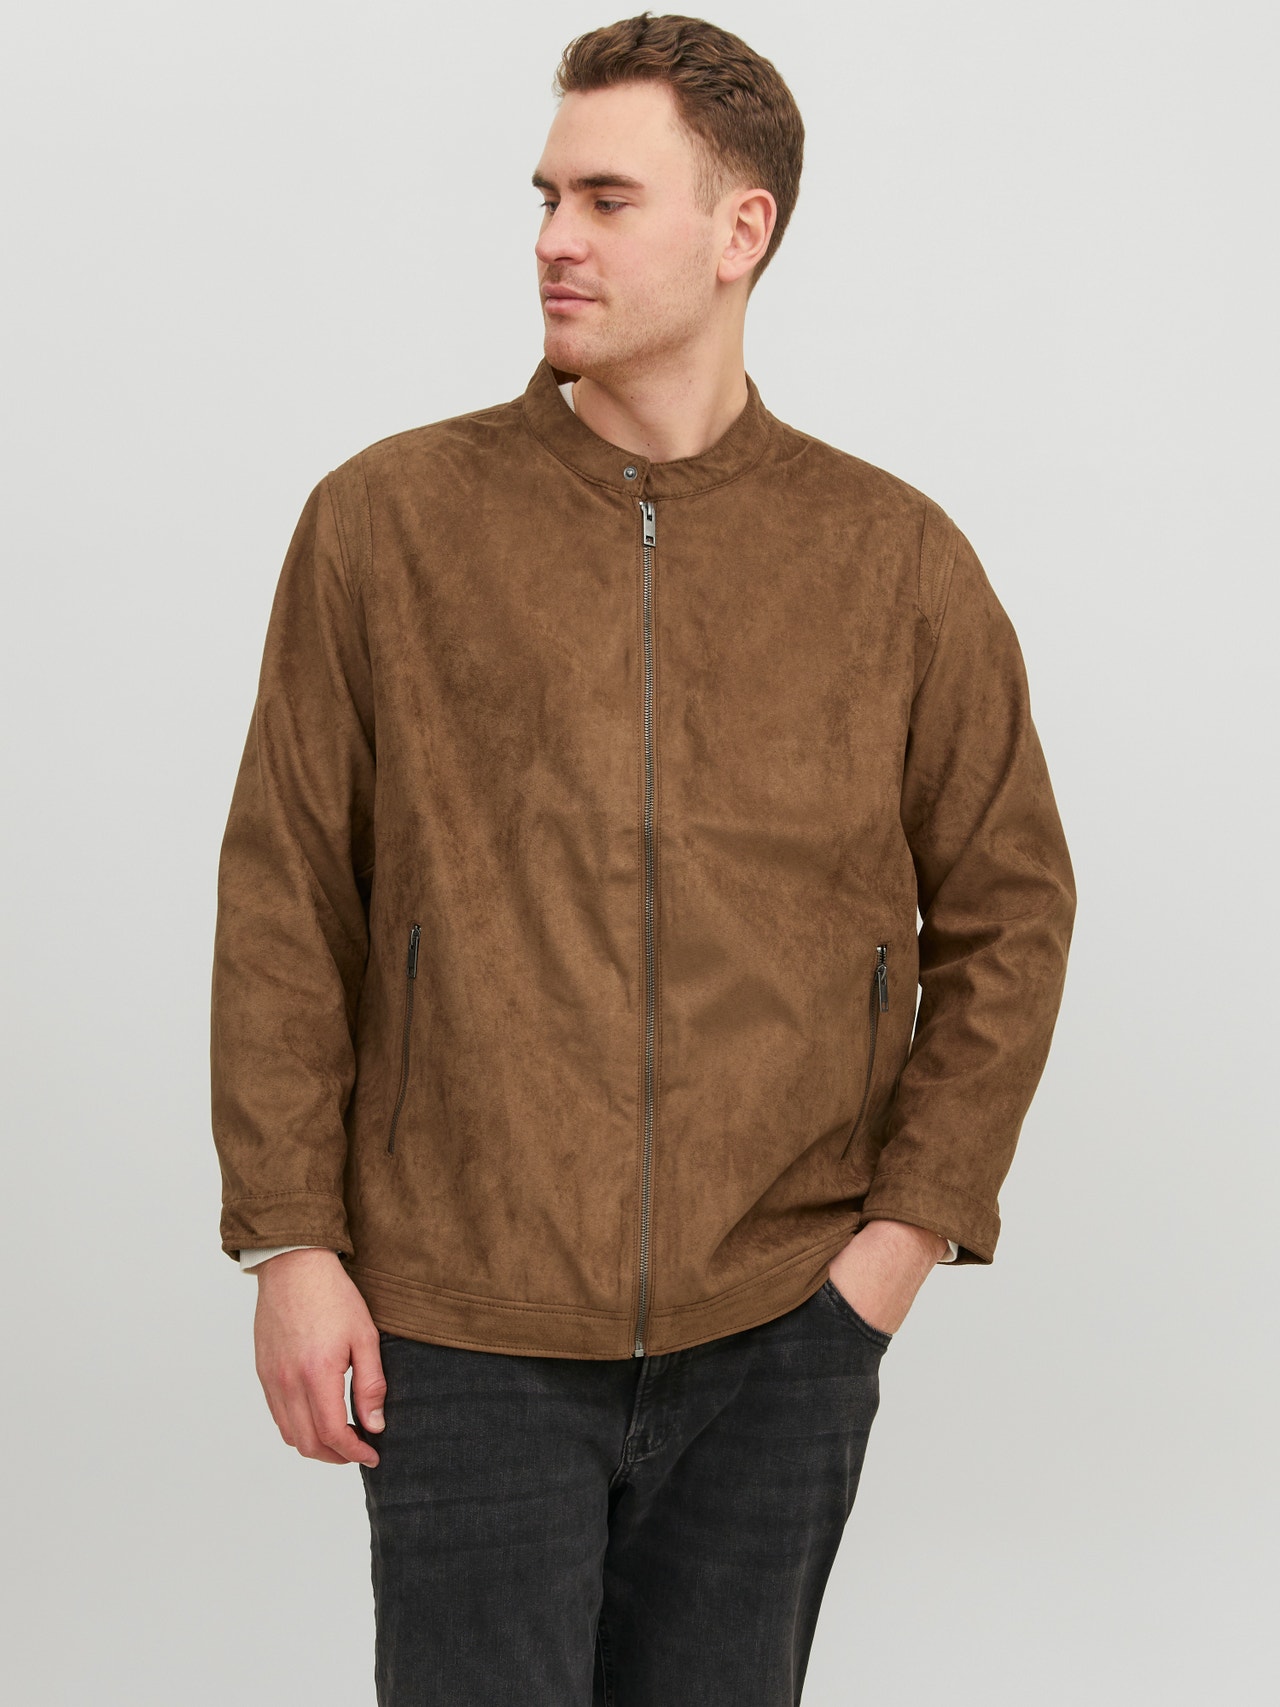 Jack & Jones Plus Size Faux leather jacket -Cognac - 12230055